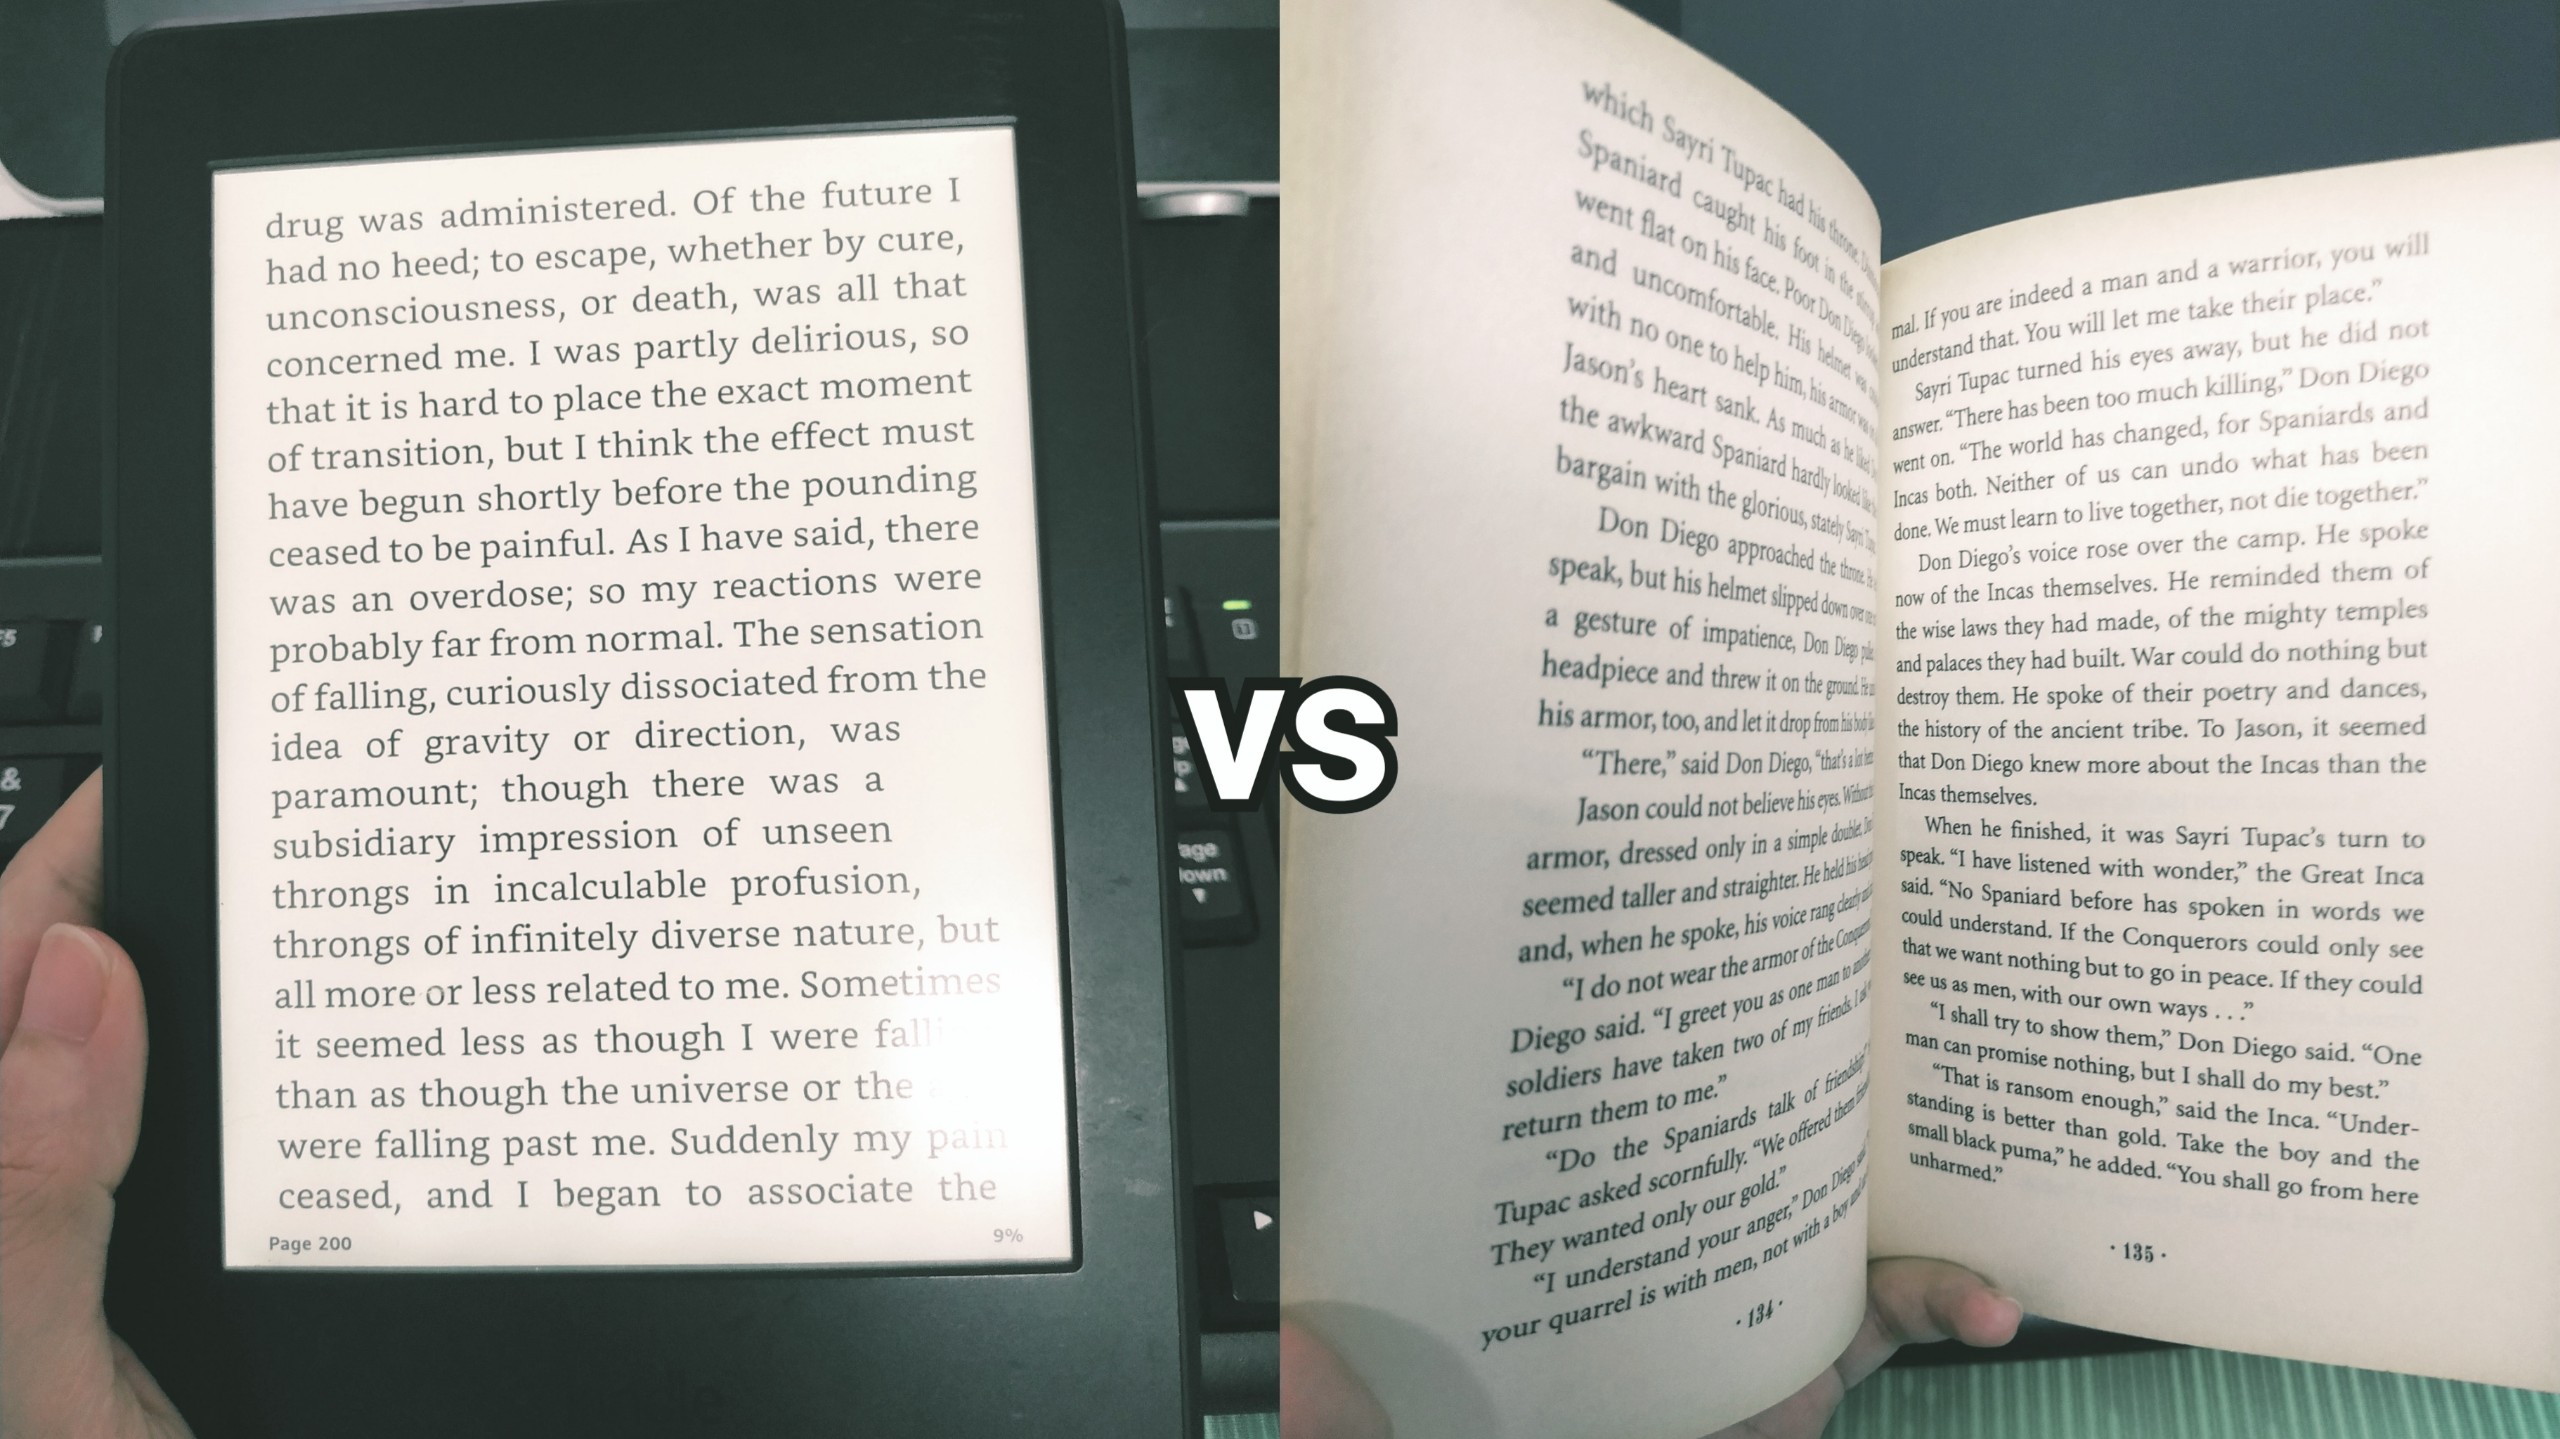 ebook-vs-printed-book-1